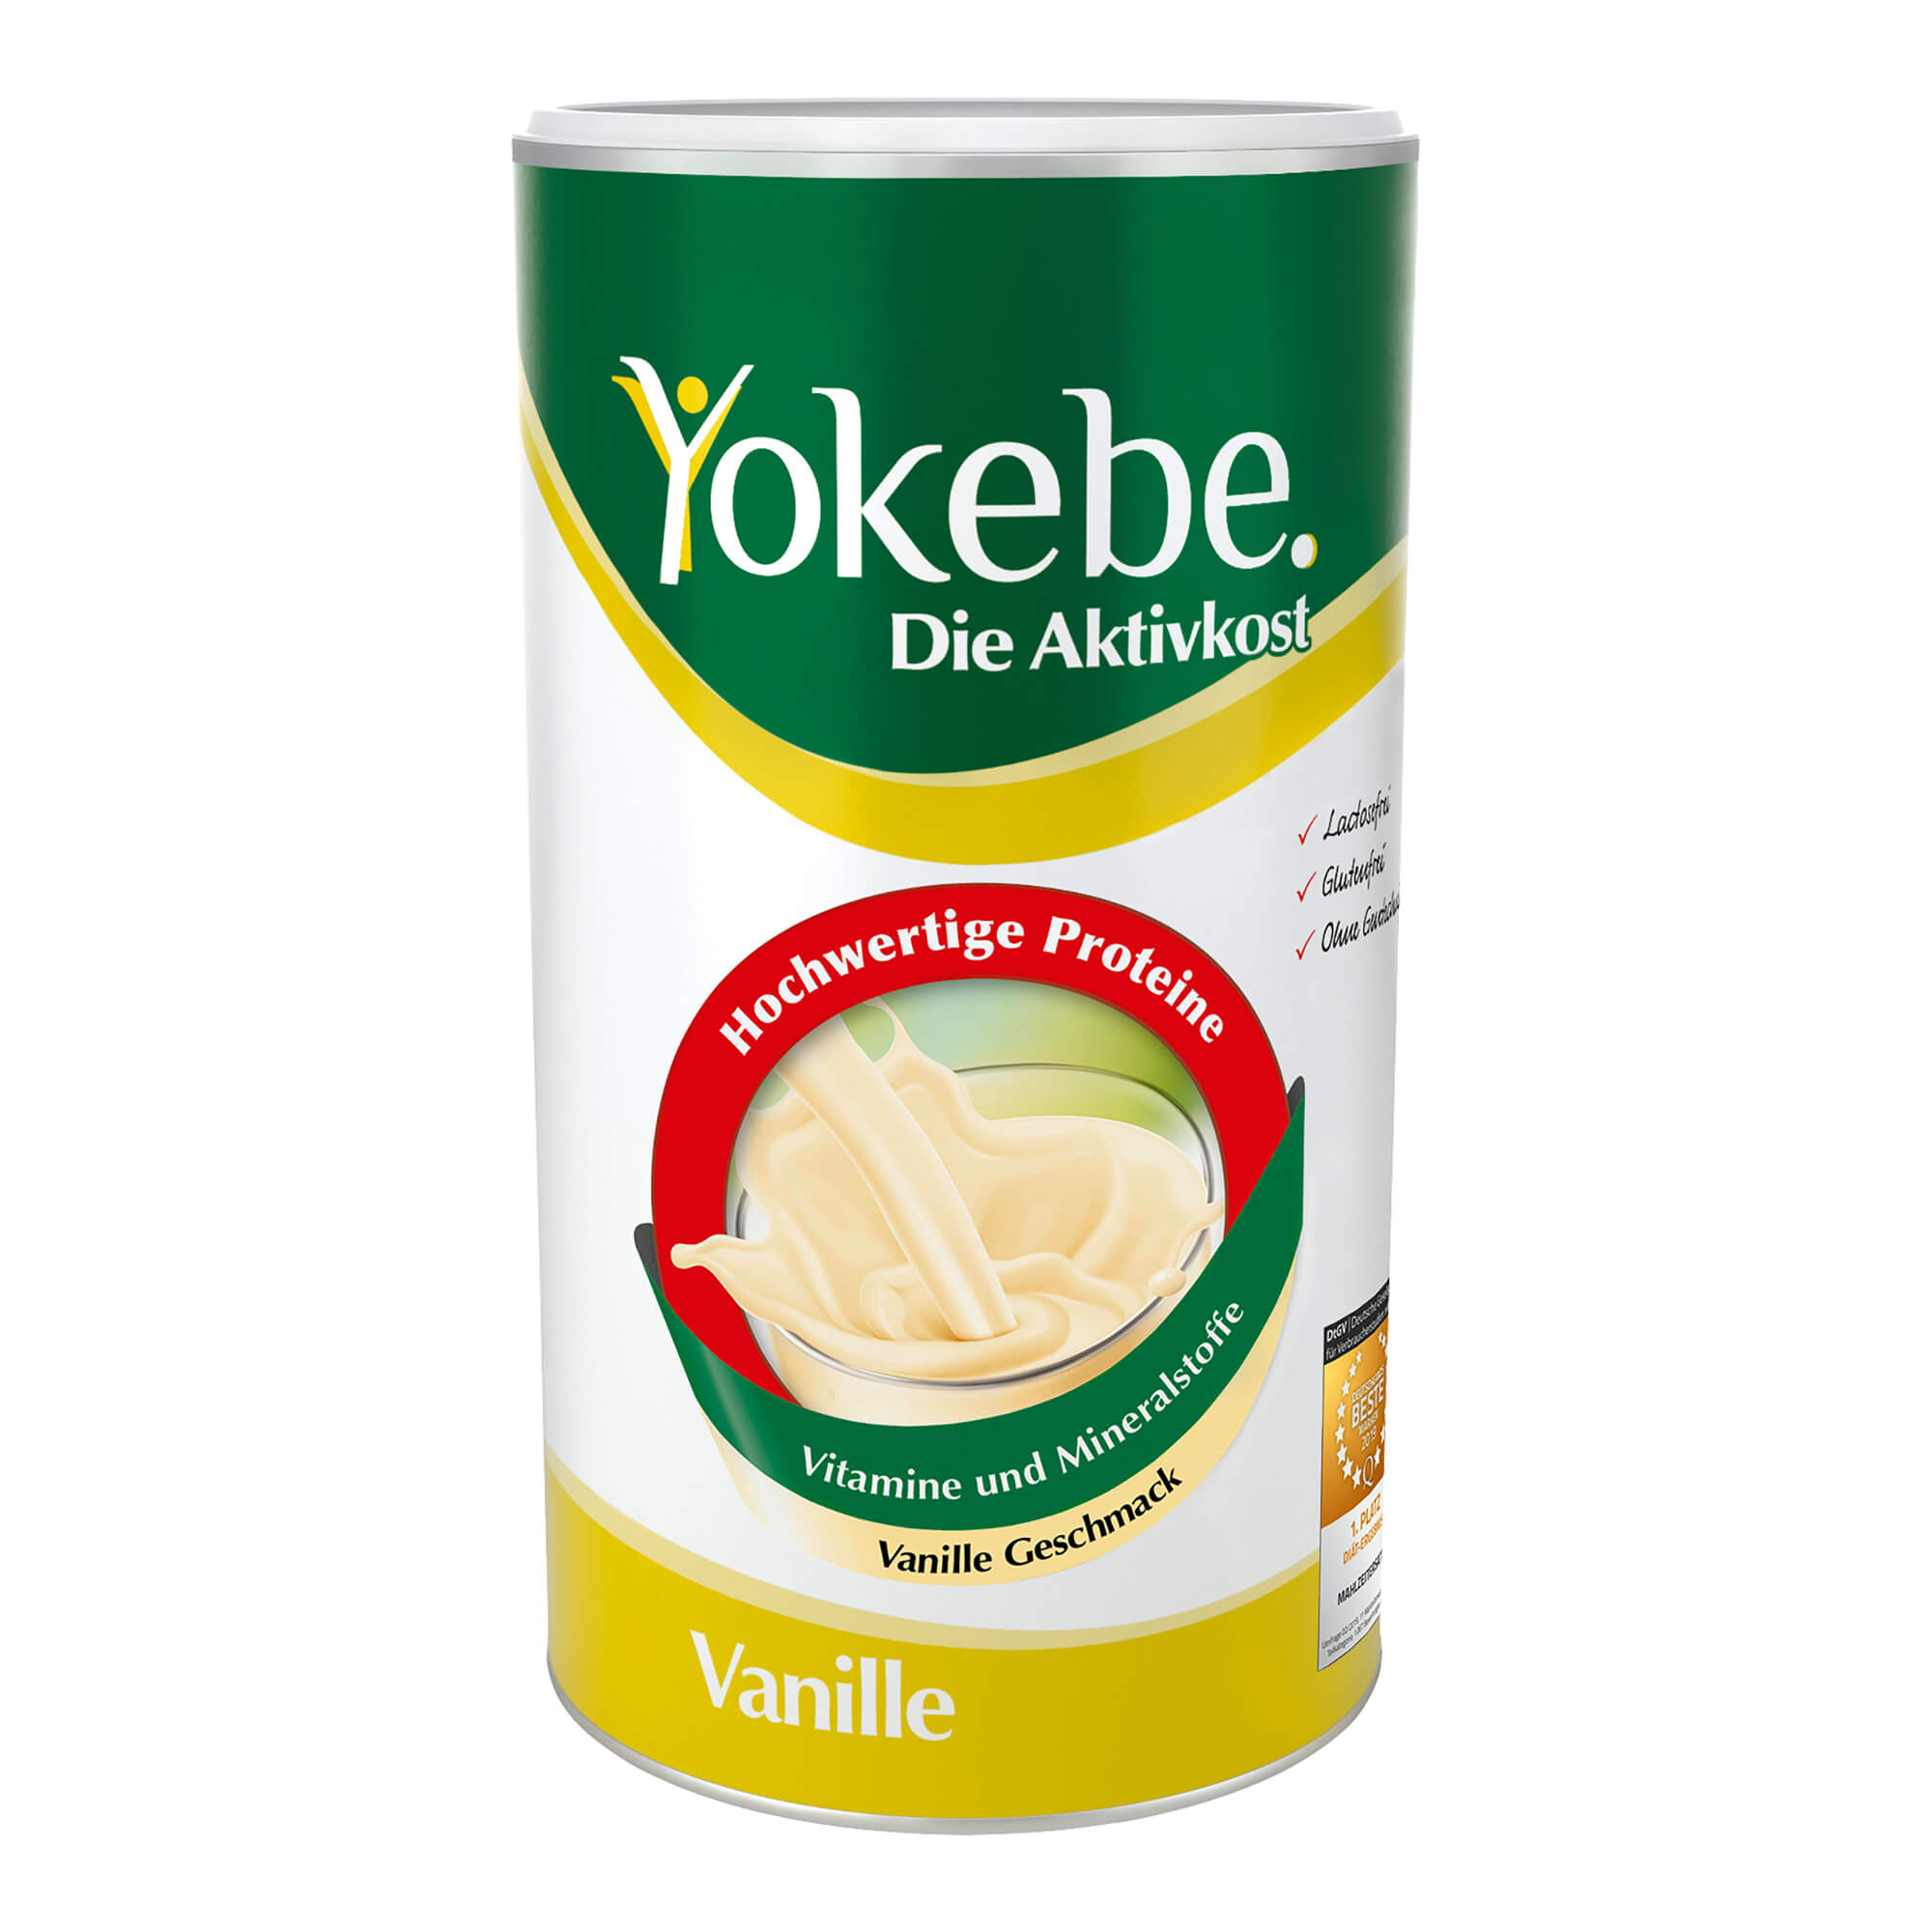 Mahlzeitersatz für eine gewichtskontrollierende Ernährung. Geschmack: Vanille.